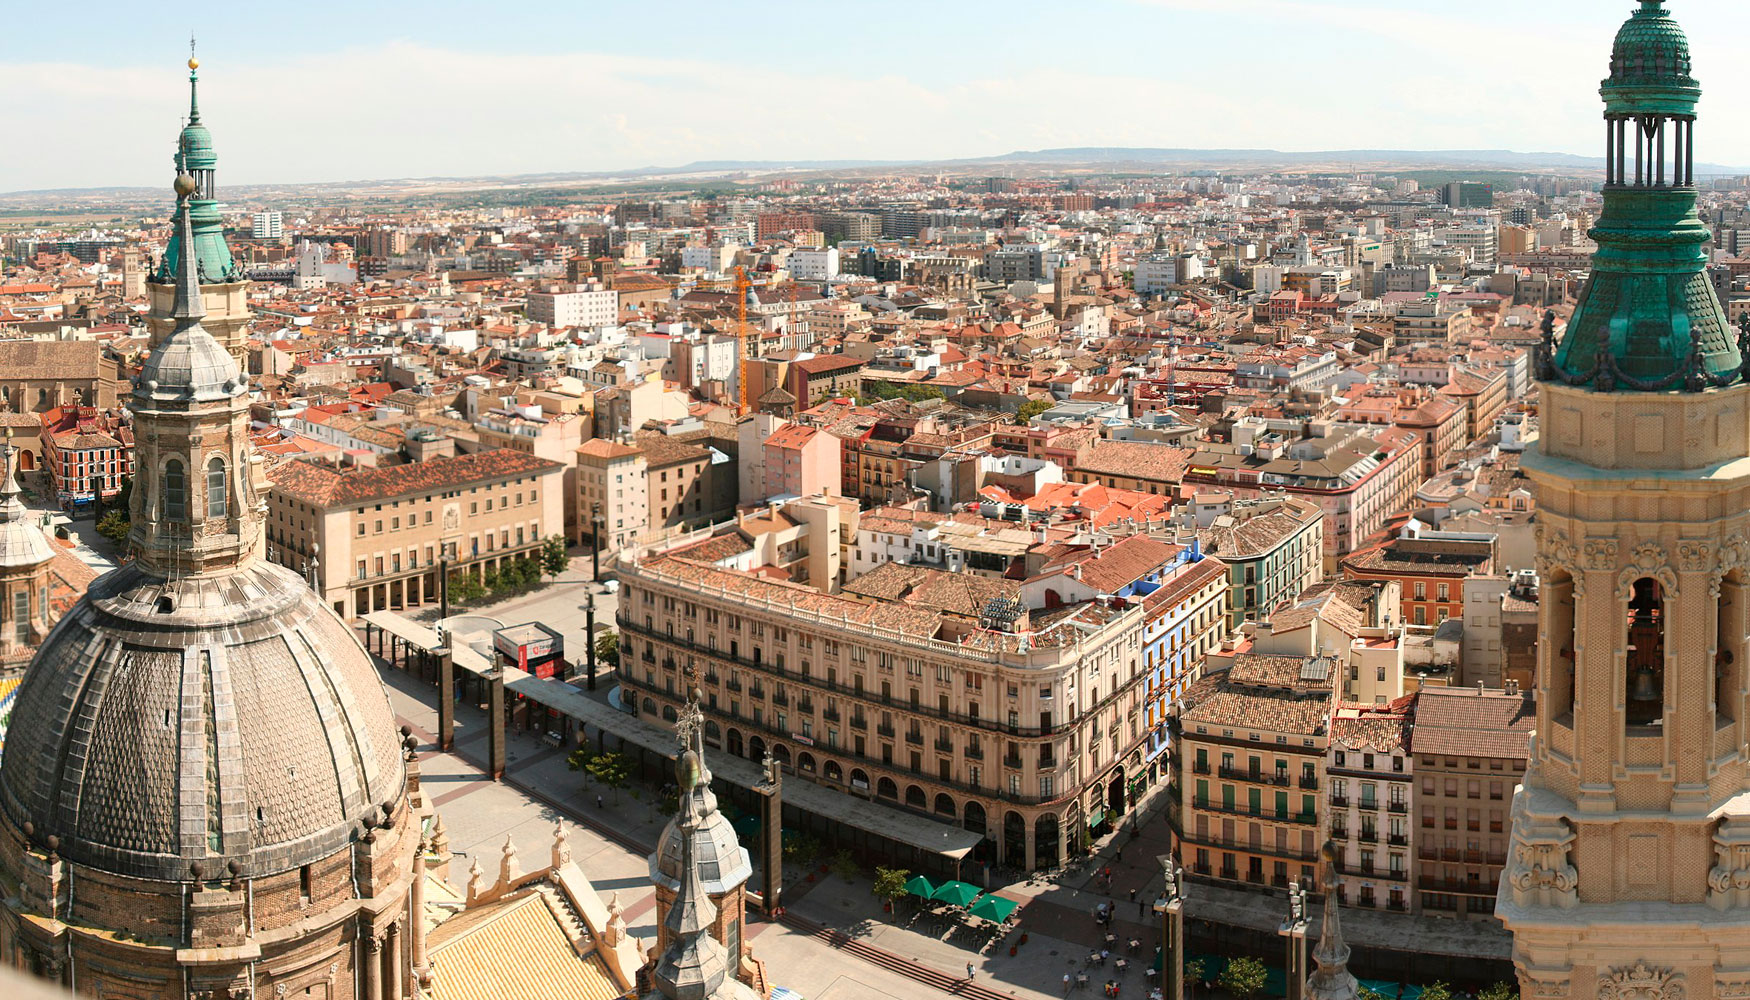 Zaragoza (en la imagen) Barcelona, Madrid, Sevilla, Valencia, Valladolid y Vitoria-Gasteiz han sido las ciudades espaolas elegidas. Foto: caccamo...